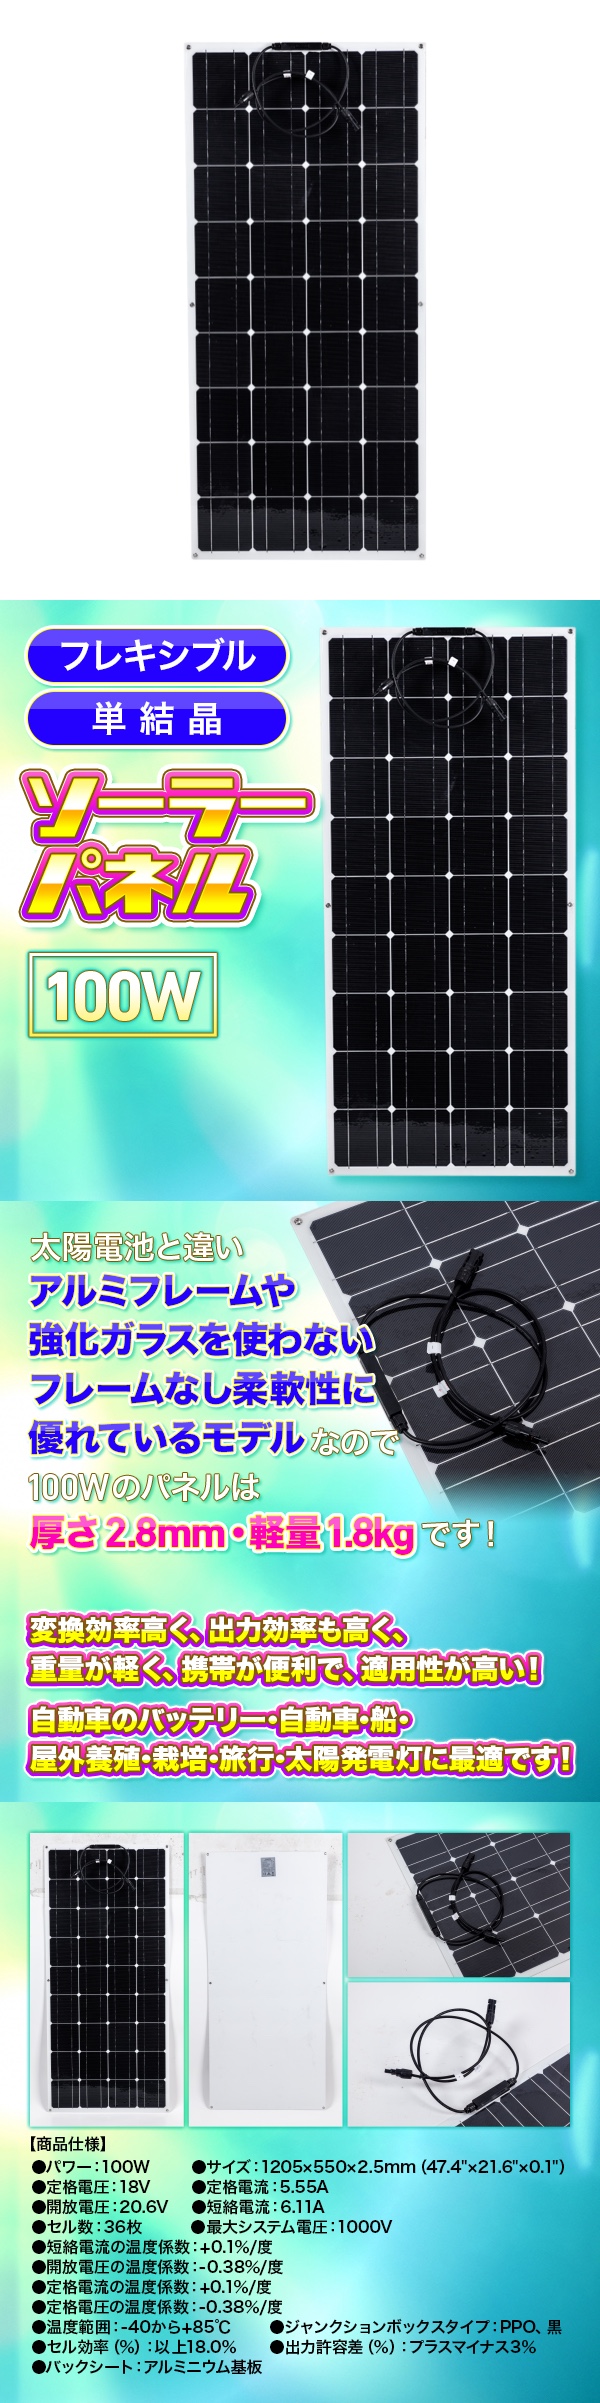 ソーラーパネル XINPUGUANG 100W 12V 軽量 単結晶 高転換率 太陽光